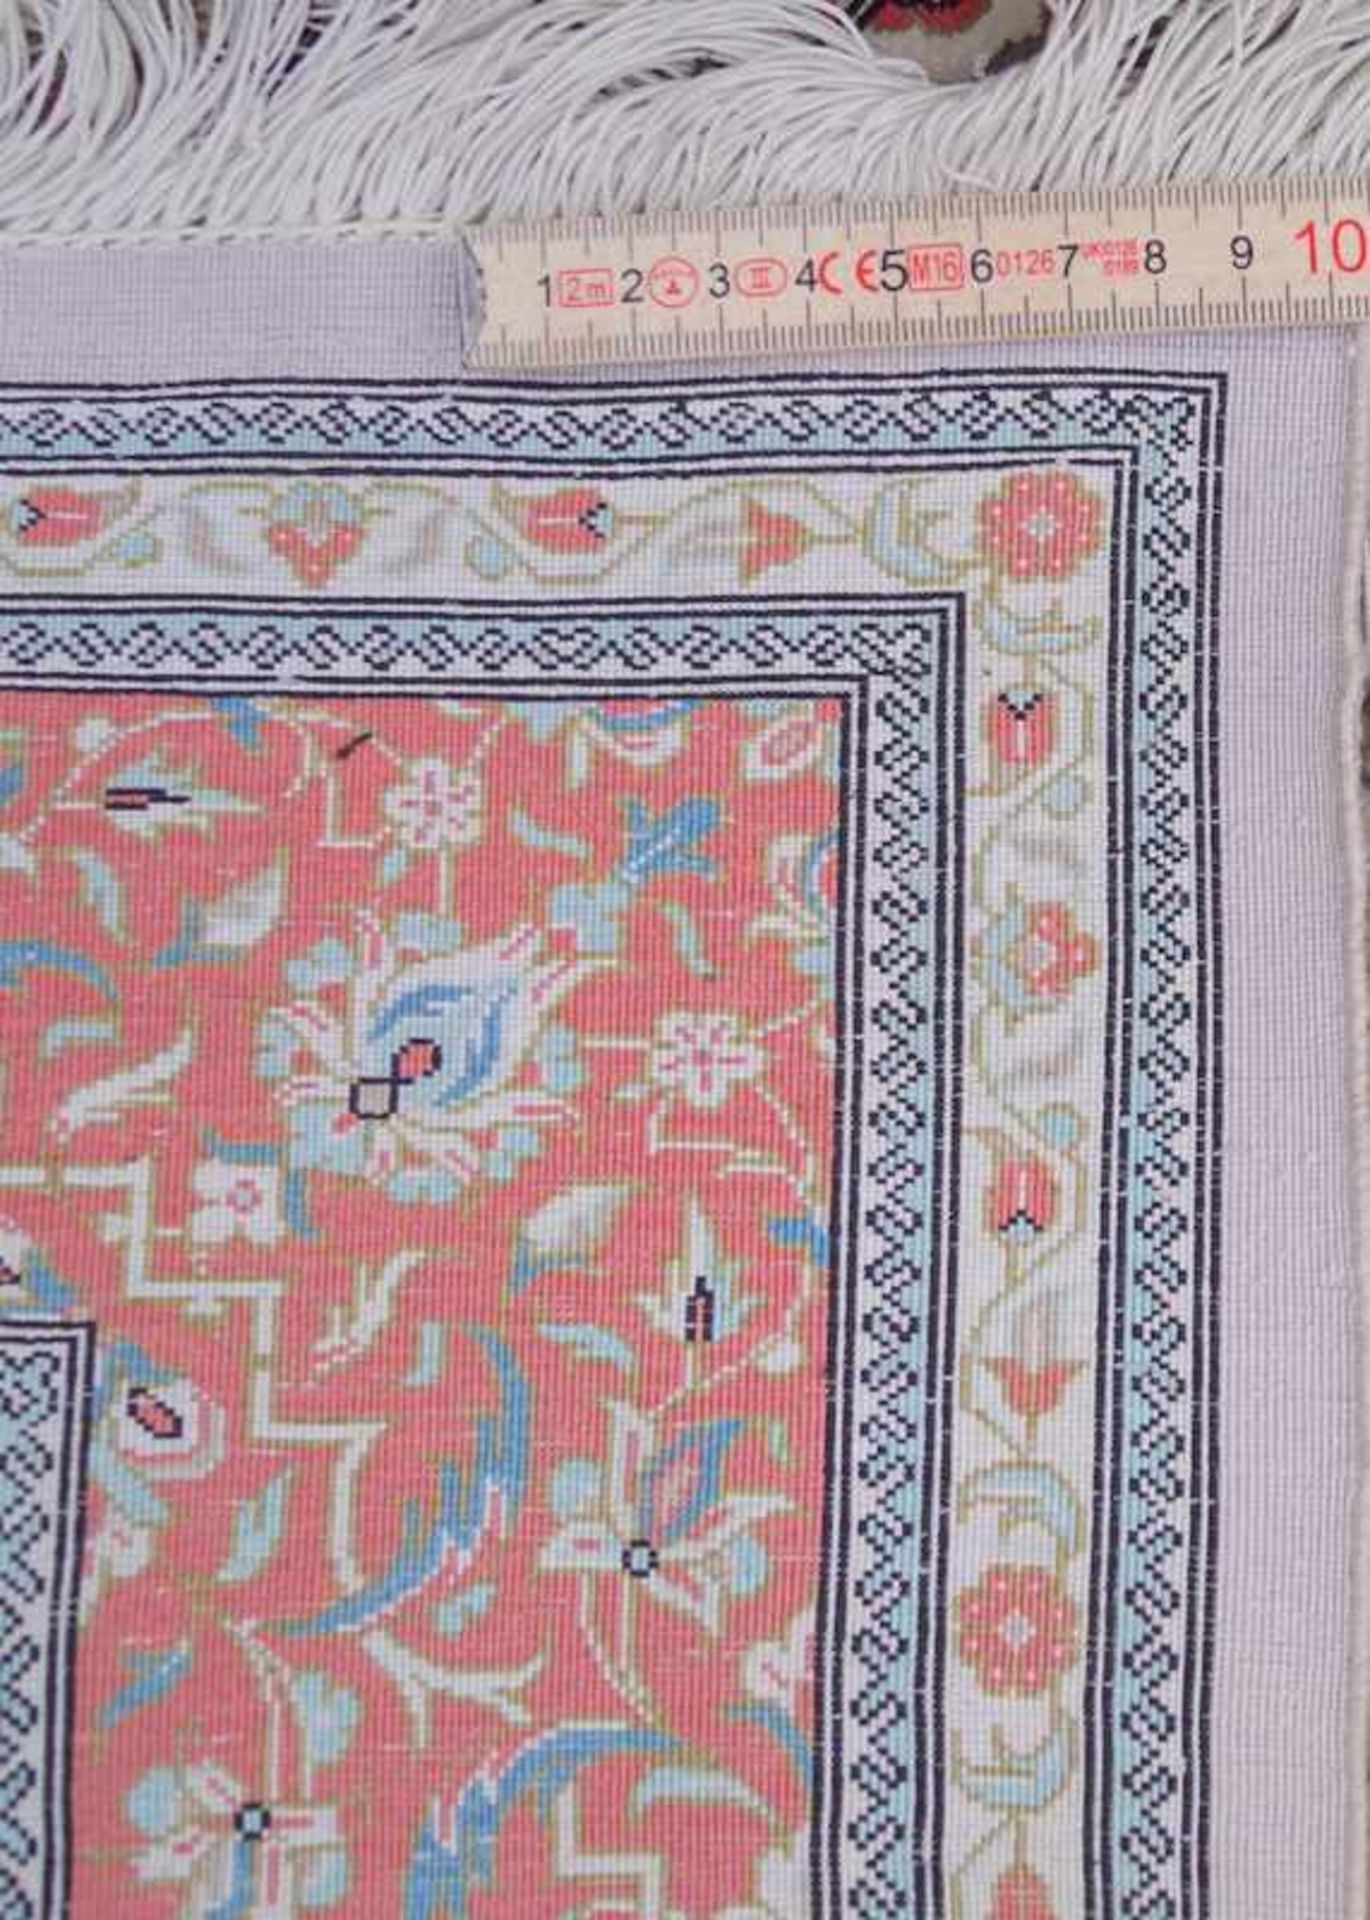 Feiner Persischer TeppichWolle auf Baumwolle, sehr gepflegt, Anilinfarben, ca. 160 x 90cm. - Bild 3 aus 3